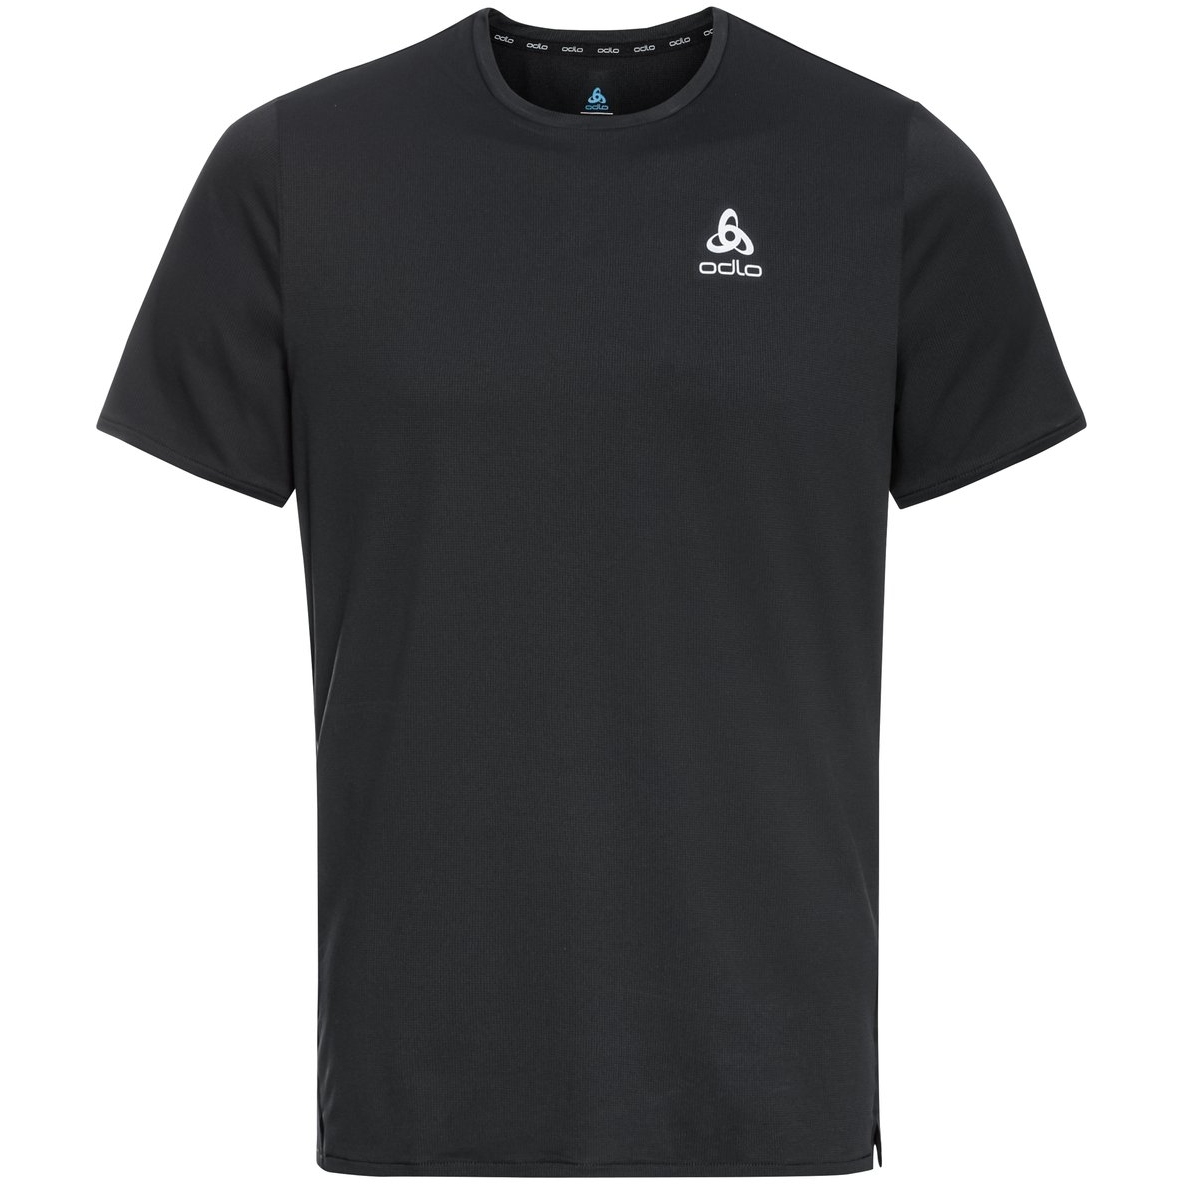 Produktbild von Odlo Herren Zeroweight Chill-Tec T-Shirt - schwarz